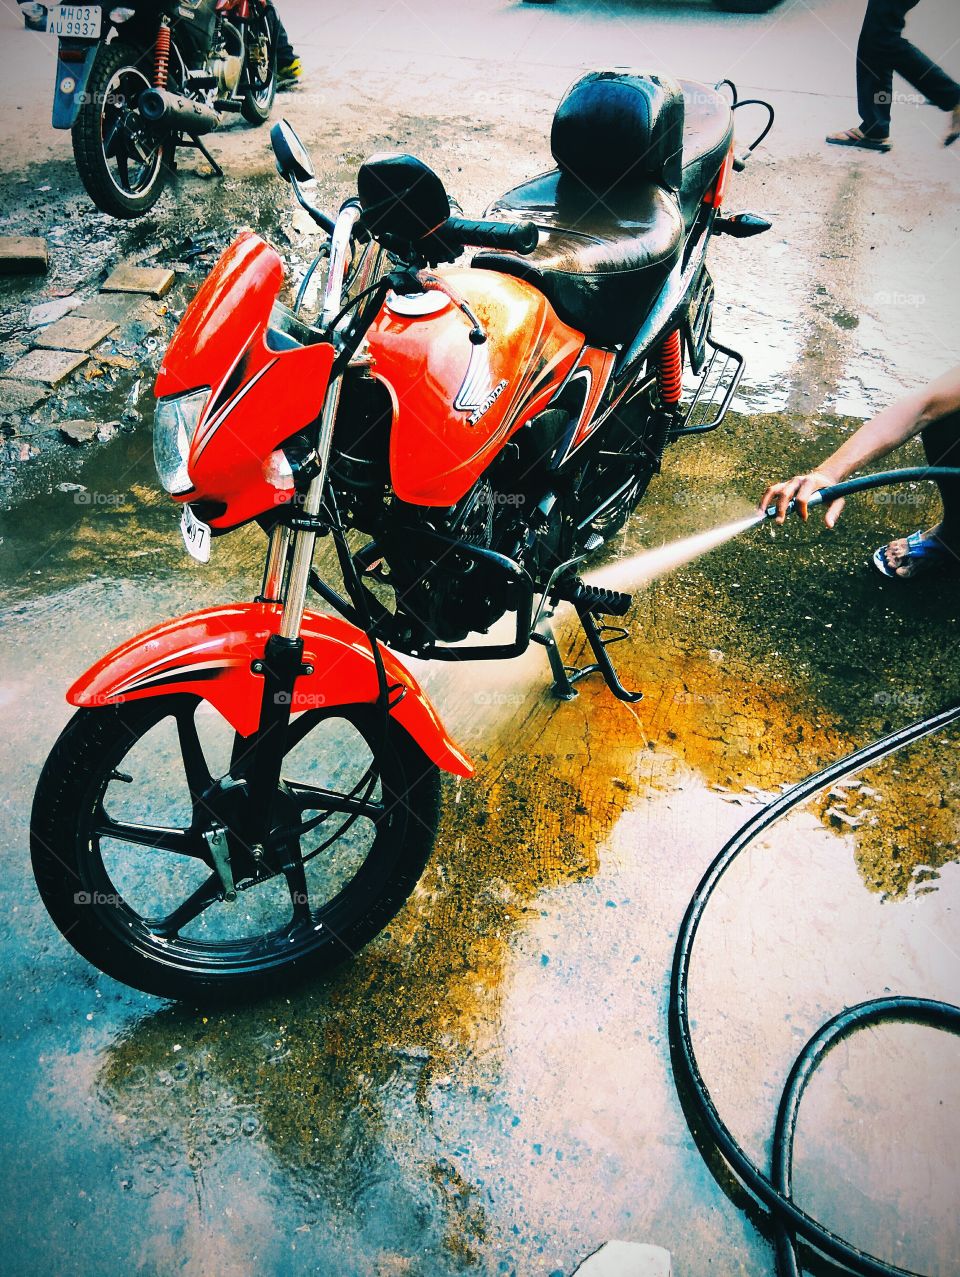 Honda India motorcycle washing